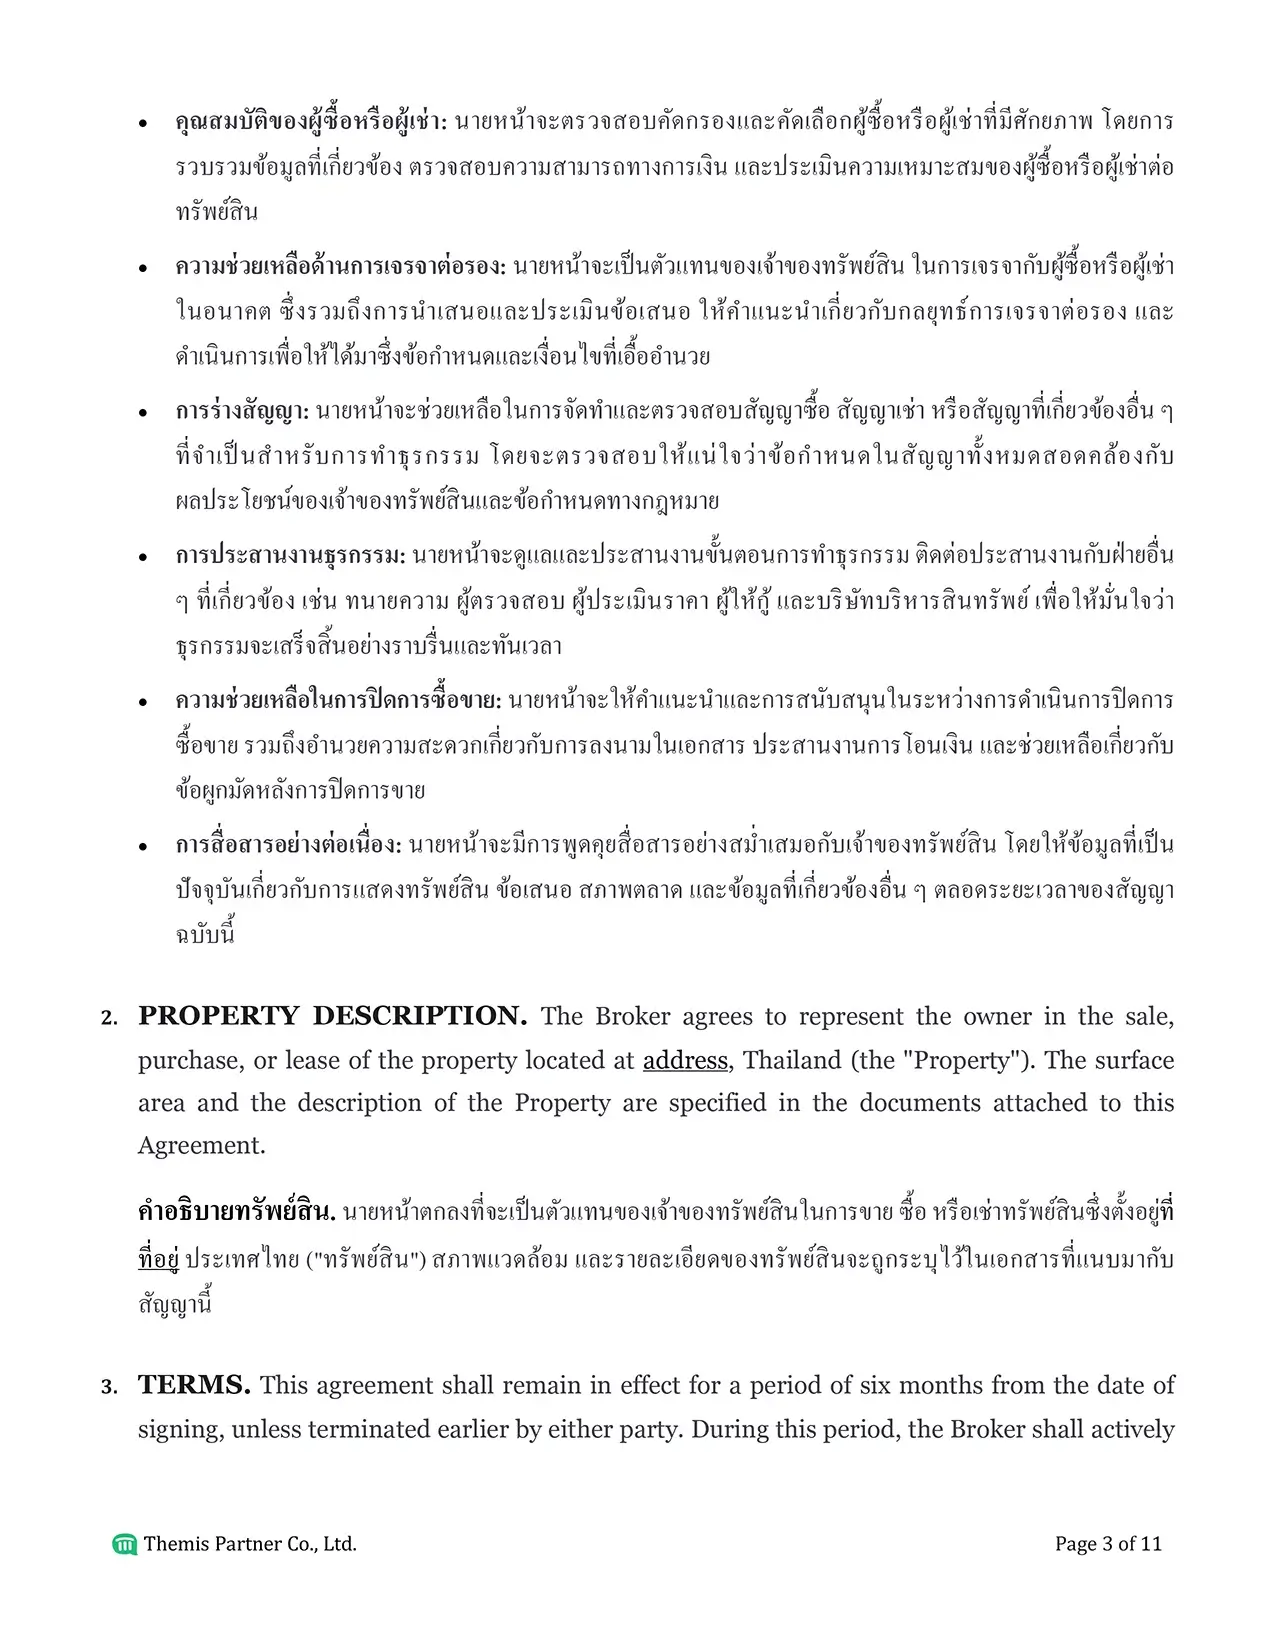 Brokerage agreement Thailand 3